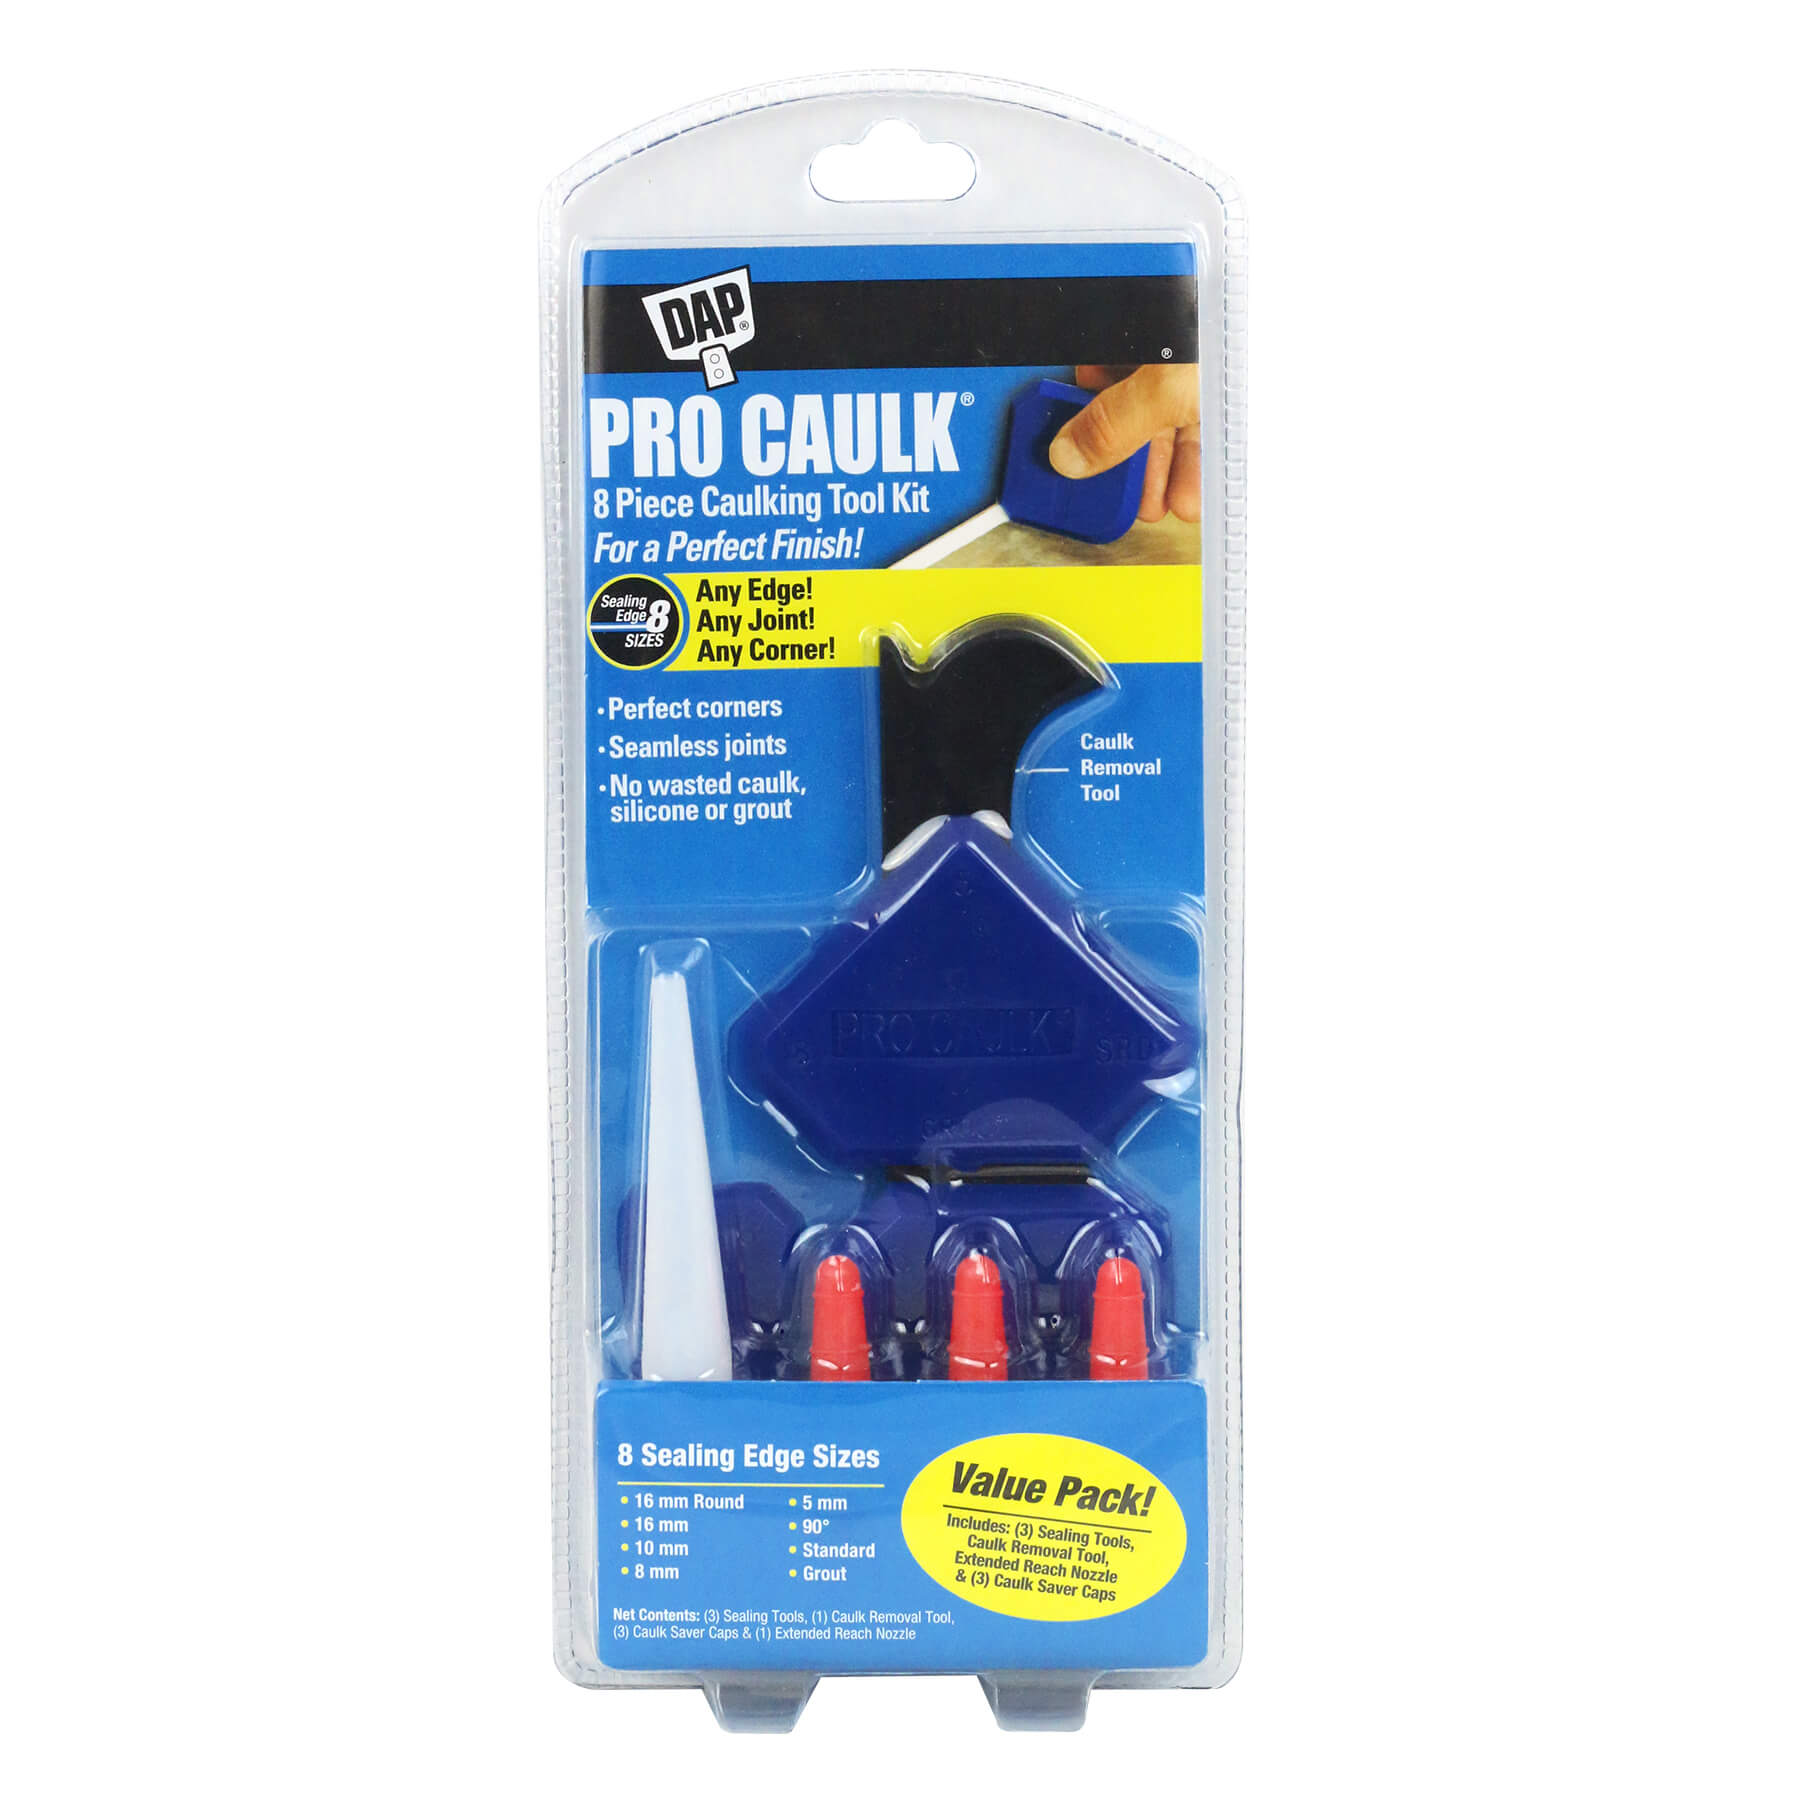 PRO CAULK® 8 Piece Caulking Tool Kit